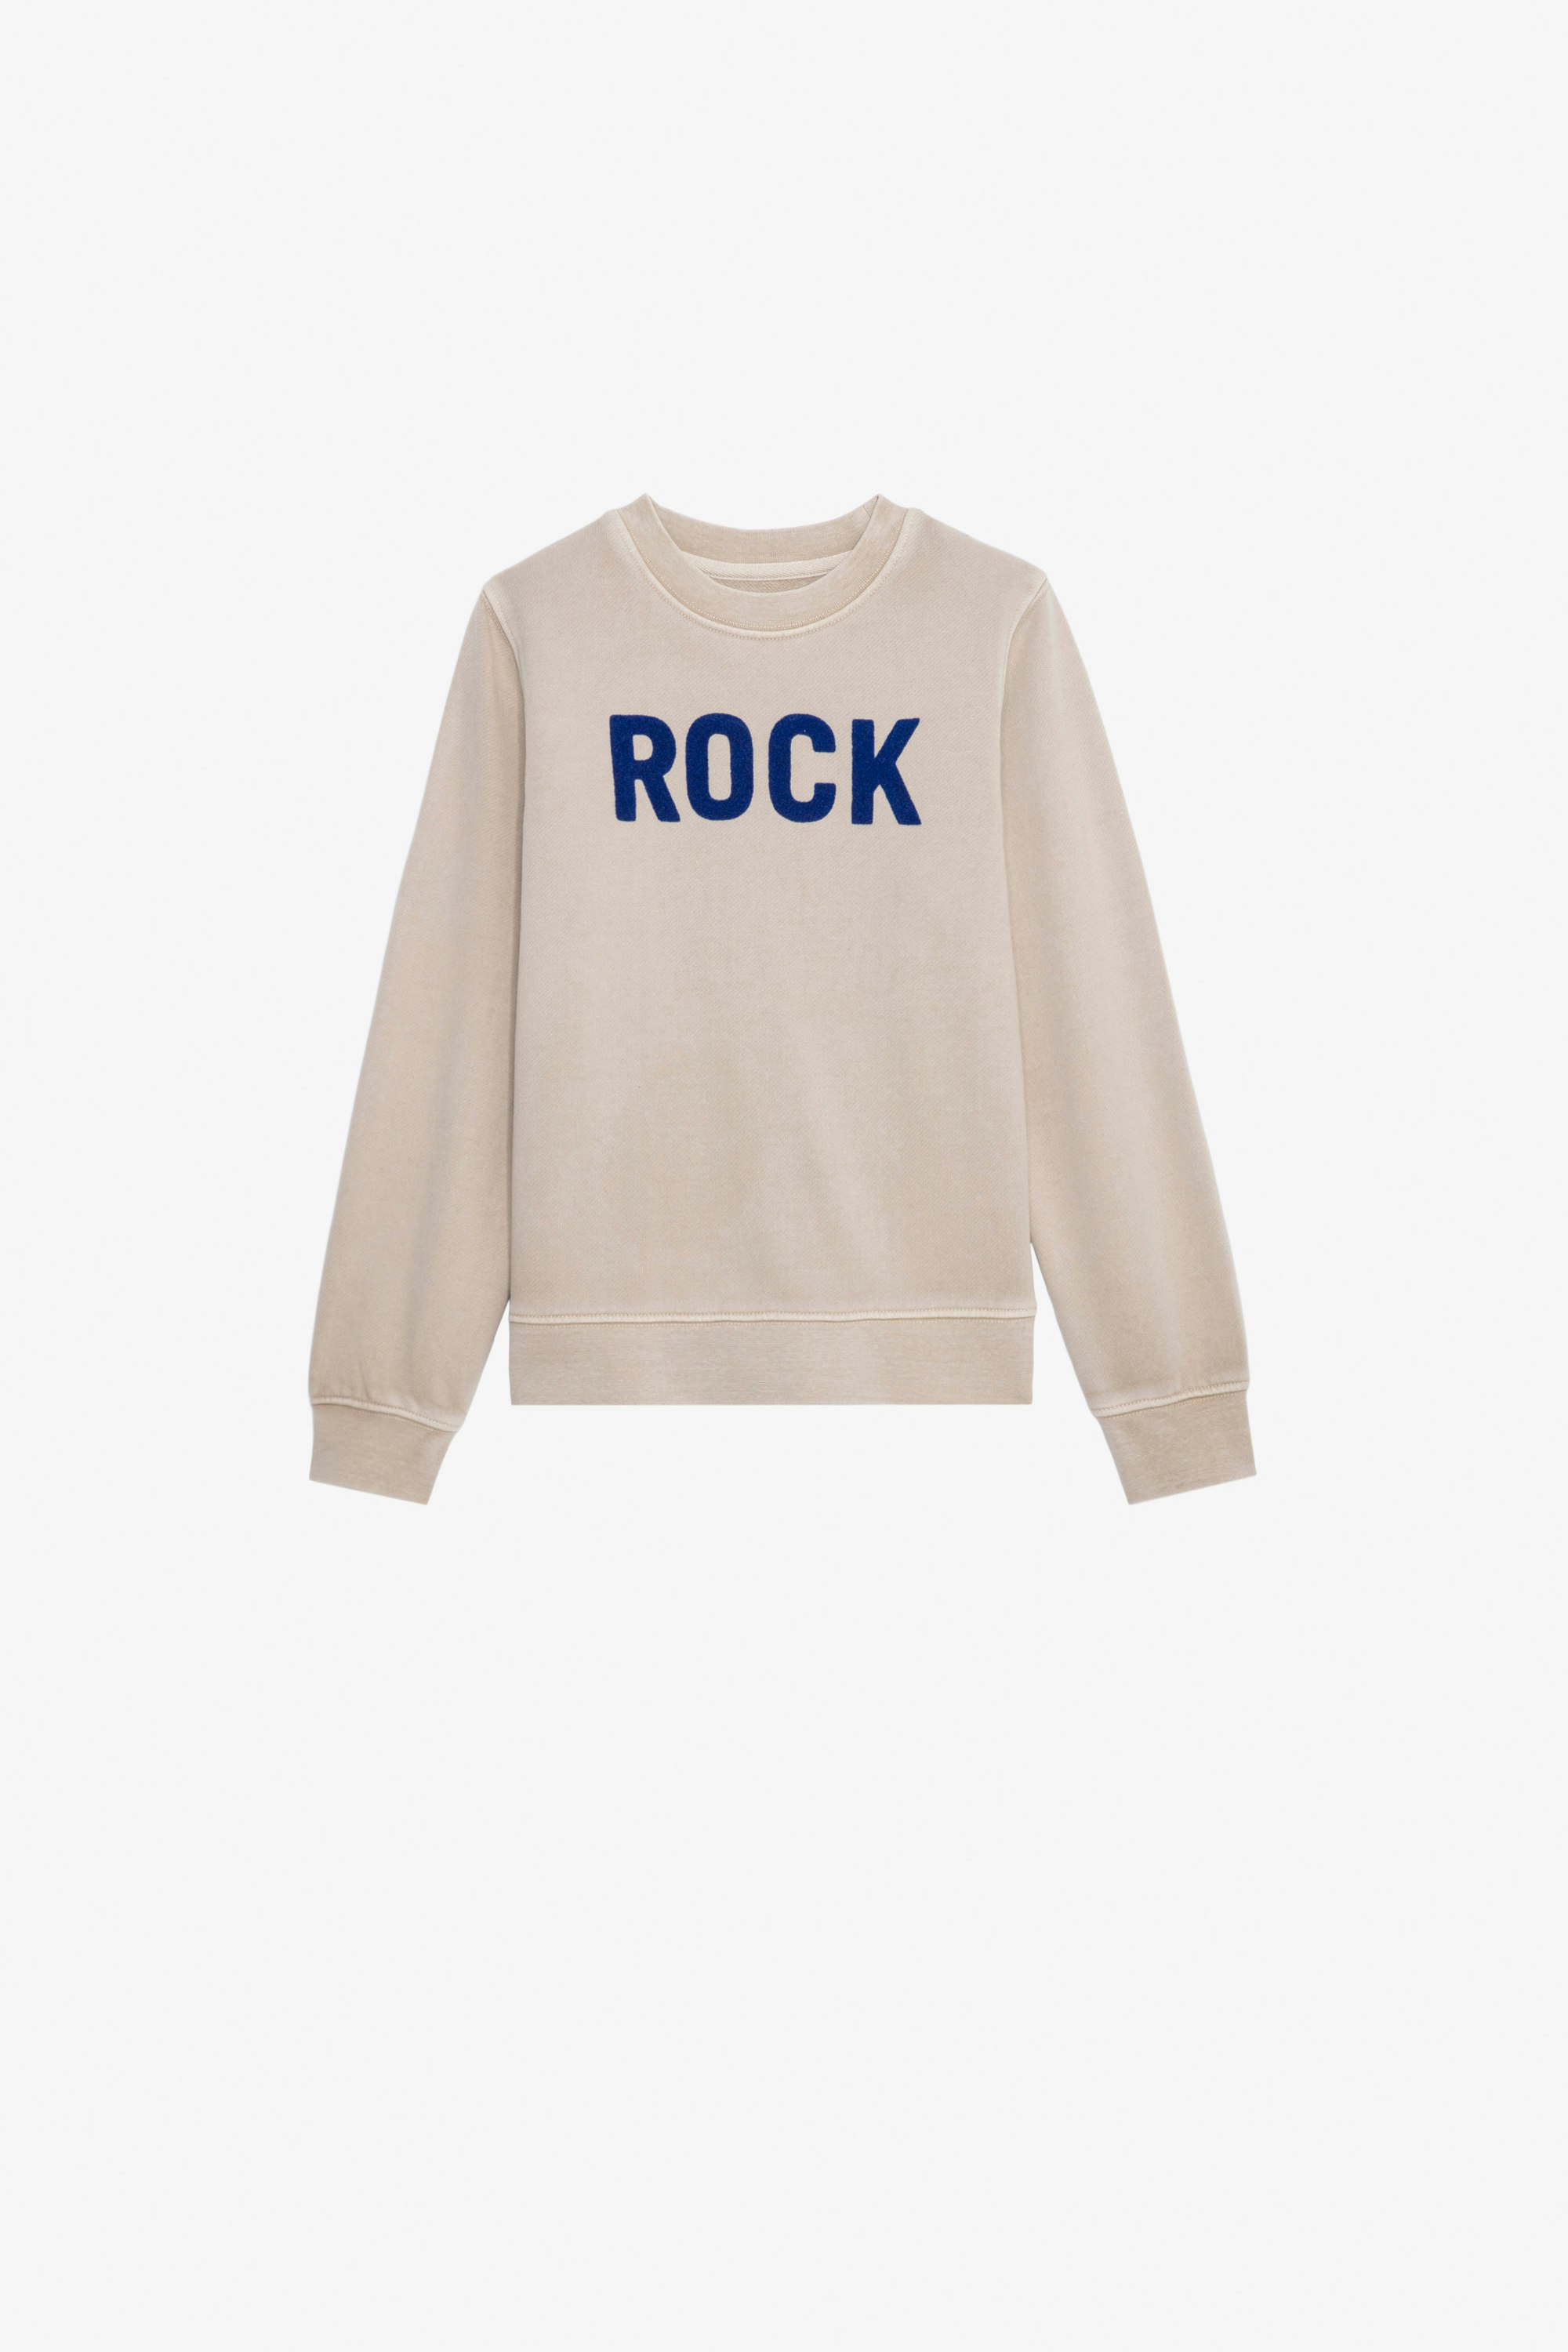 Sweatshirt Simba für Jungen - Sweatshirt aus Baumwolle mit Molton-Futter in Beige mit dem Schriftzug „Rock“ für Jungen.